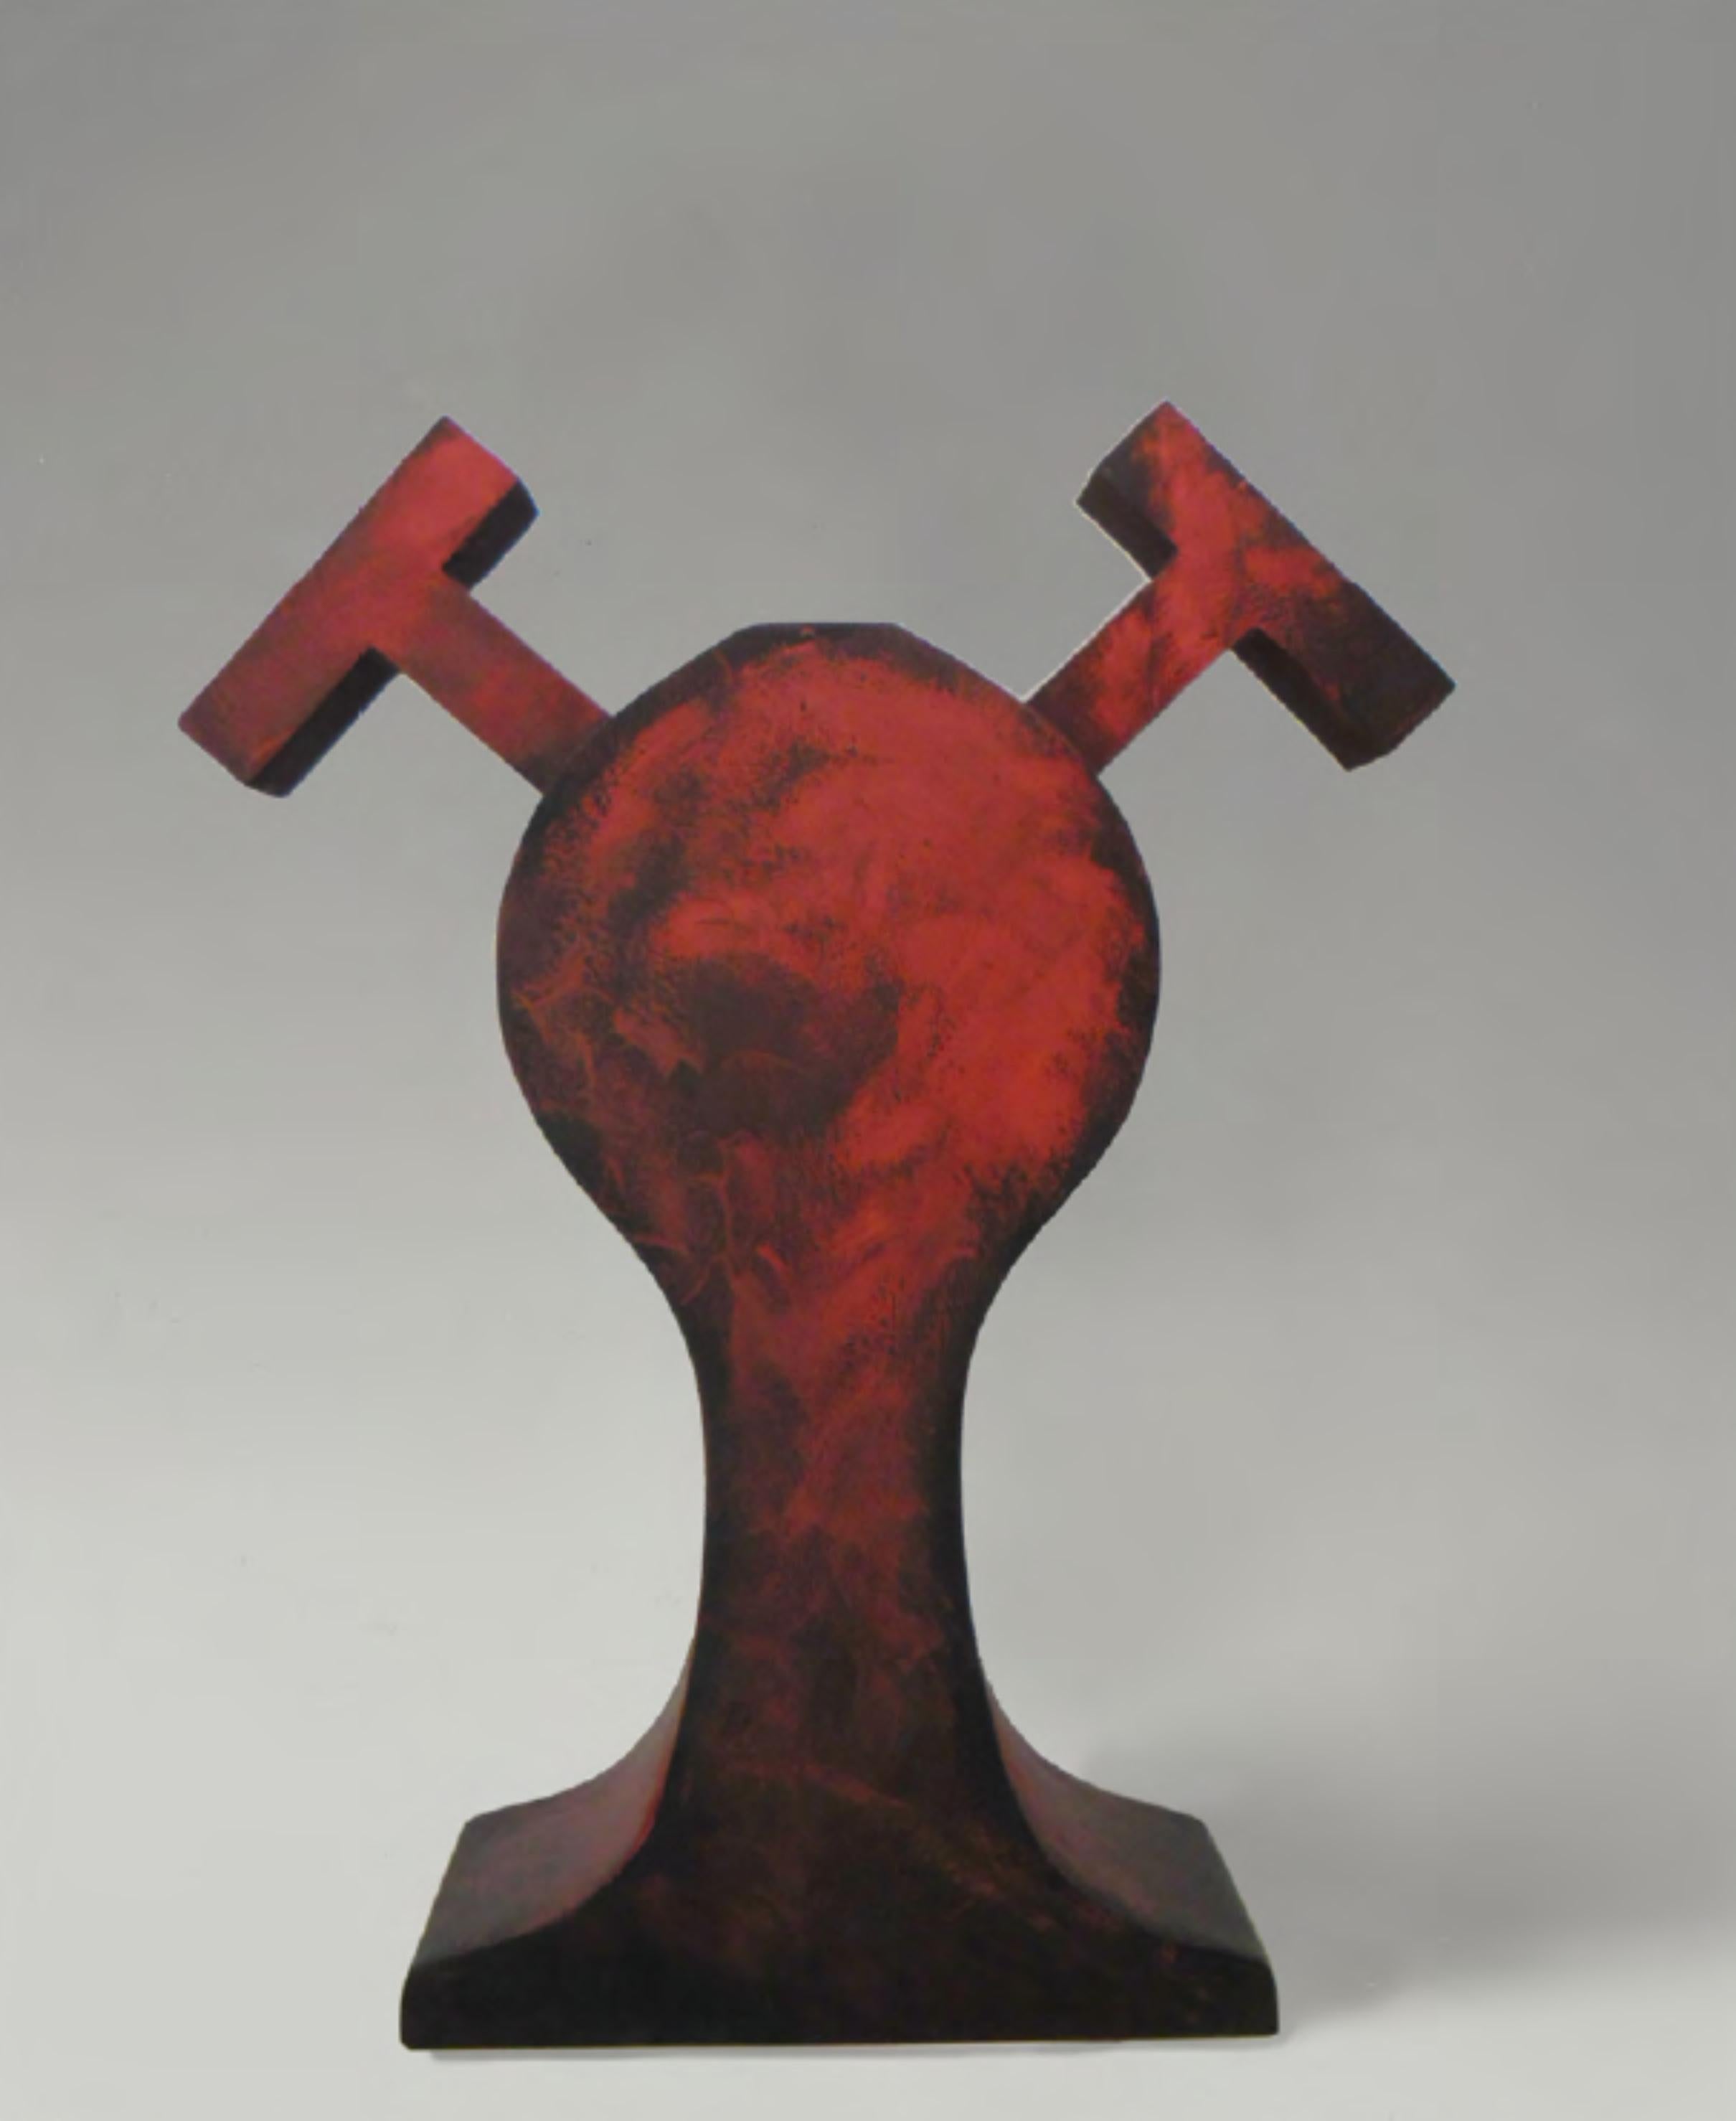 CF Te17 Terre von Caturegli Formica
Abmessungen: B 45 x H 50 cm
MATERIALIEN: Keramik

Terres, Dakar, Senegal, 1987-1991 

TERRES ist eine Serie von symbolischen Keramikskulpturen, die in Dakar, Senegal, im Atelier 